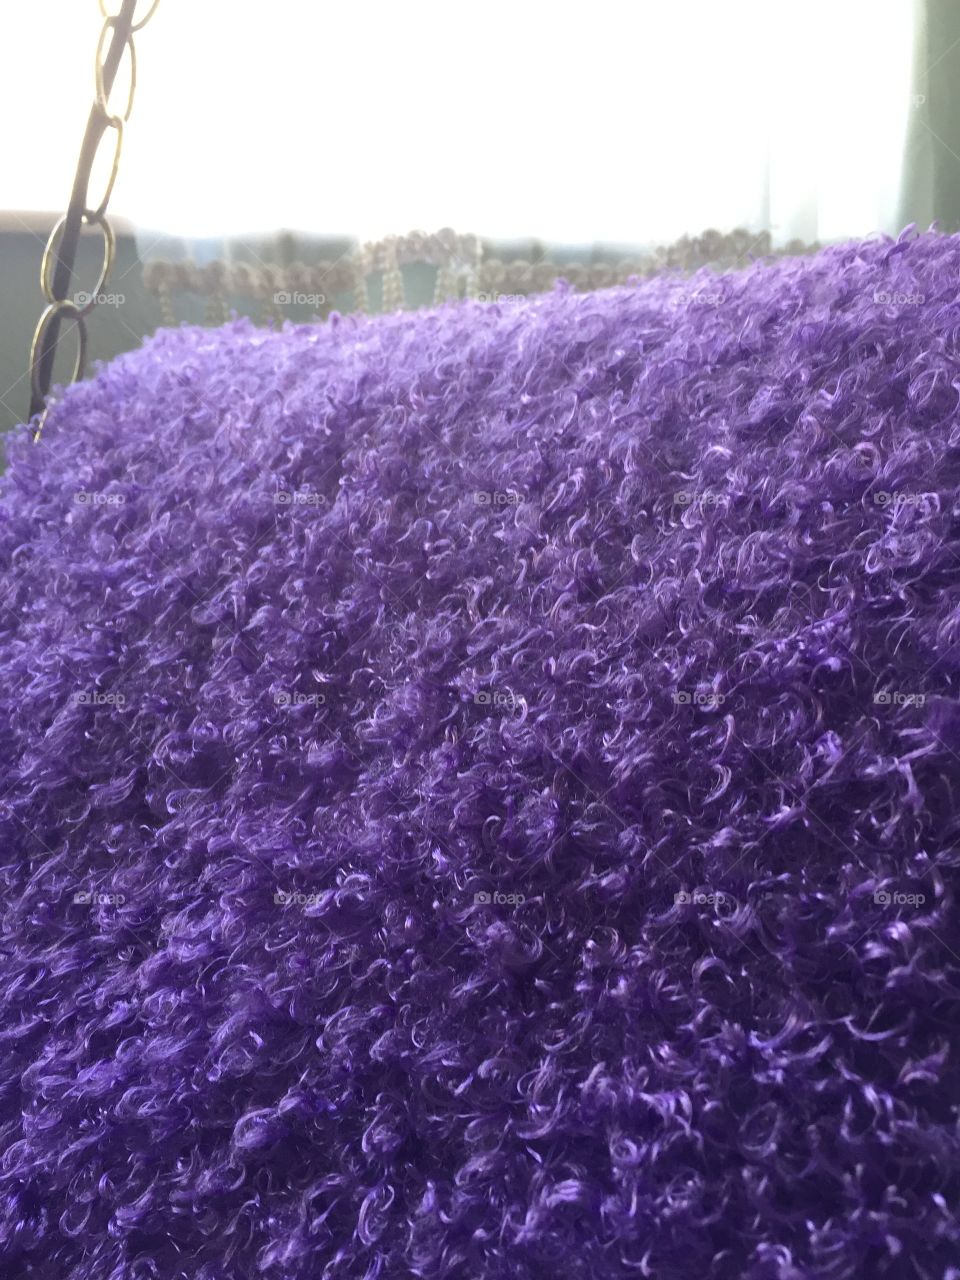 Purple fuzzy blanket